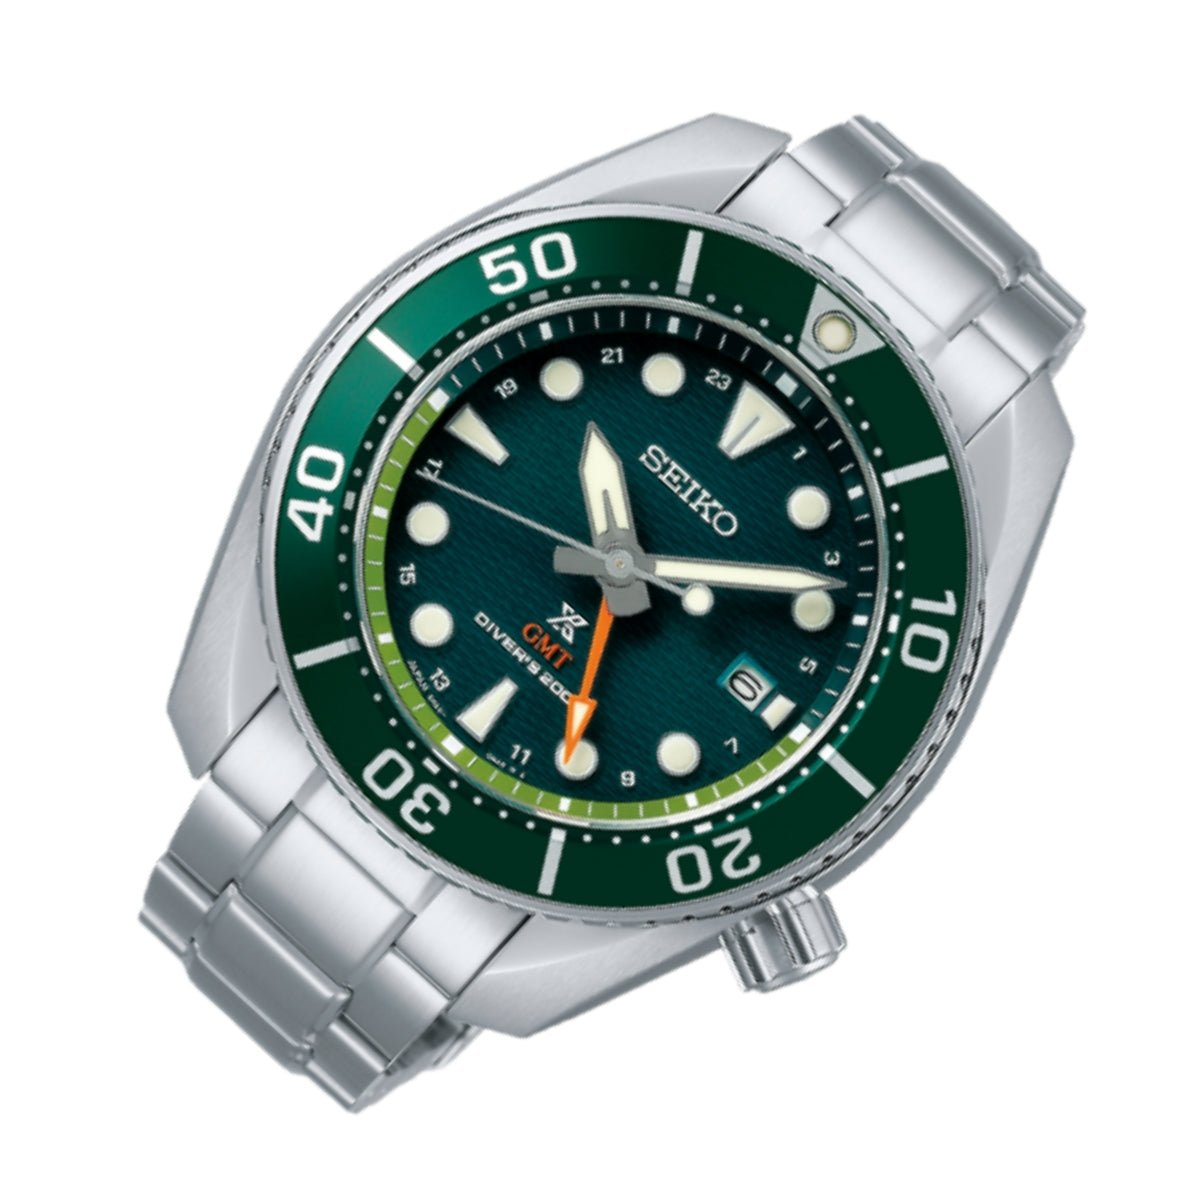 Seiko JDM Prospex GMT Sumo Solar Divers Green Dial Watch SBPK001 -Seiko